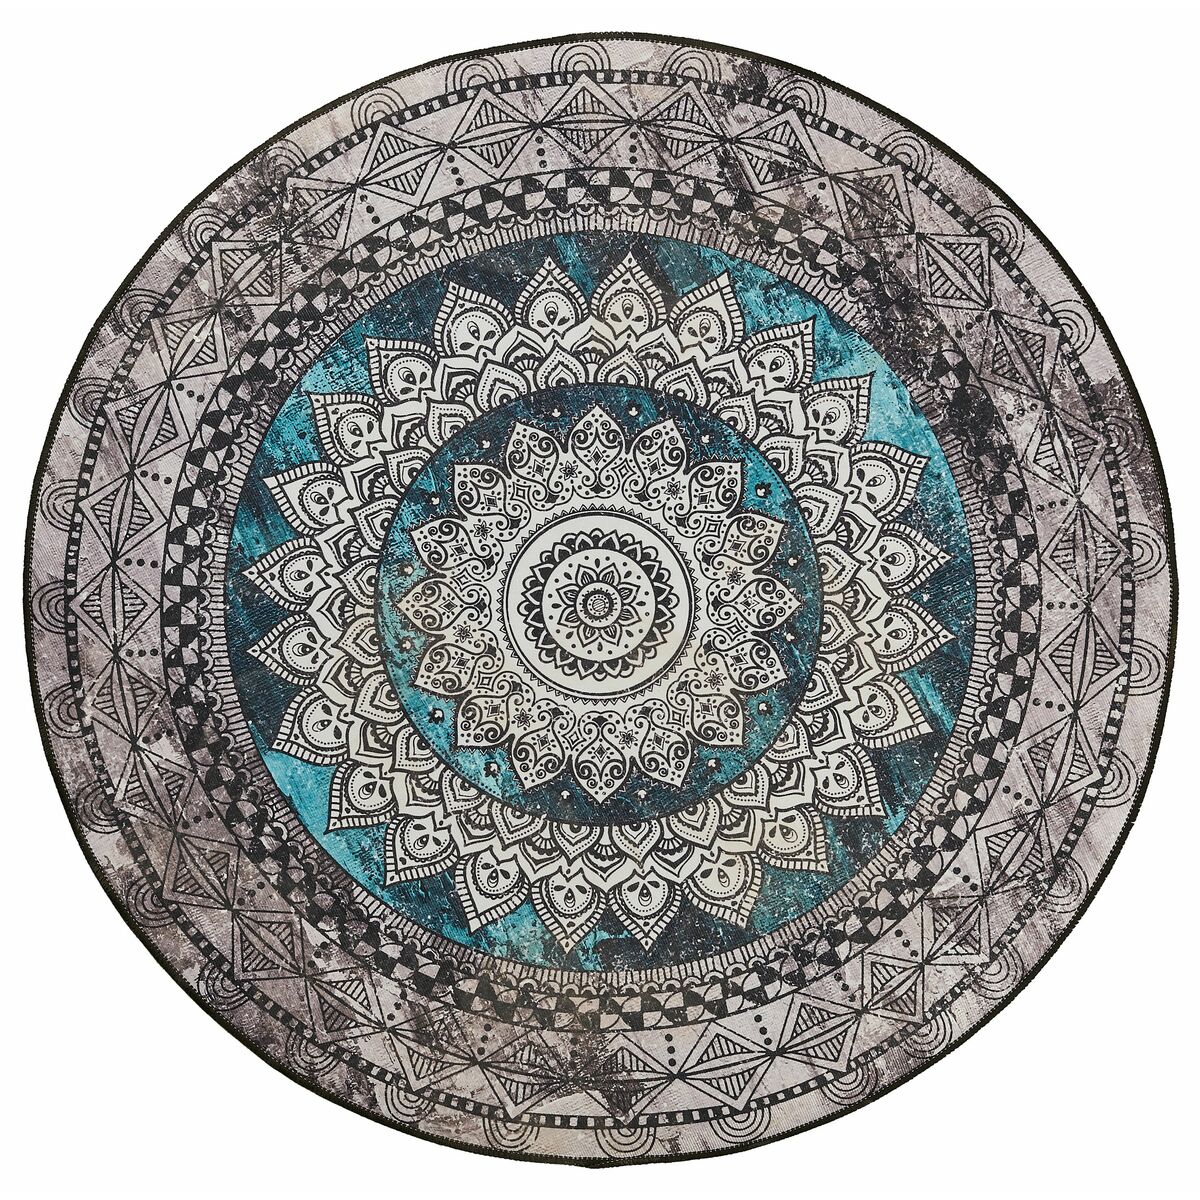 Dywanik okrągły dekoracyjny LDY-69 szaro-niebieski śr. 120 cm